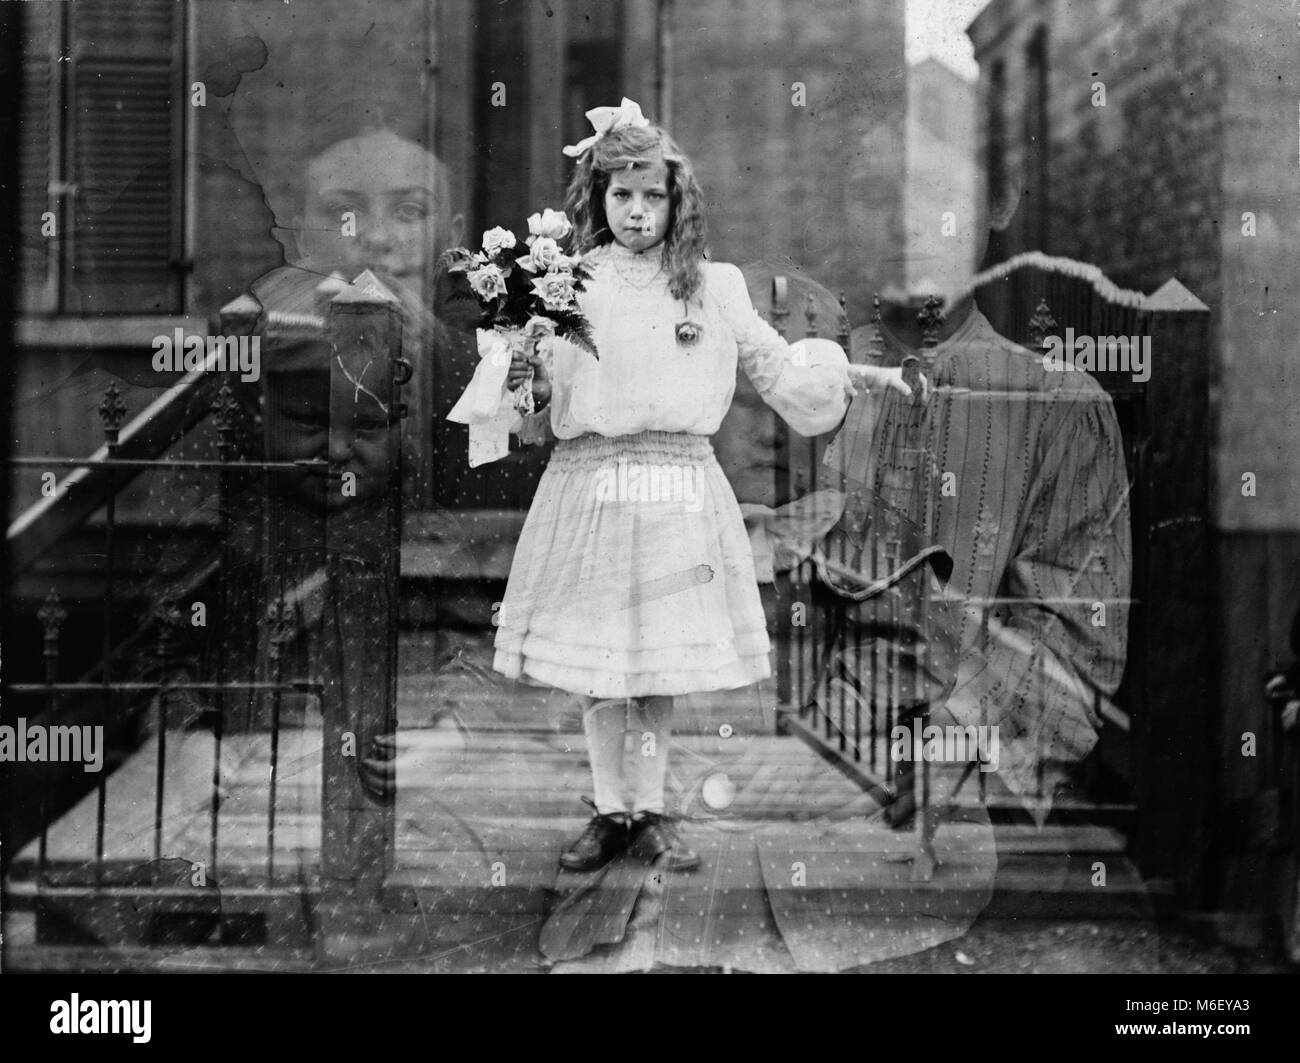 Espíritu de doble exposición fotografía mostrando una Chica sujetando un ramo de flores rodeada por cuatro figuras fantasmagóricas, Chicago, IL, 1905. Foto de stock